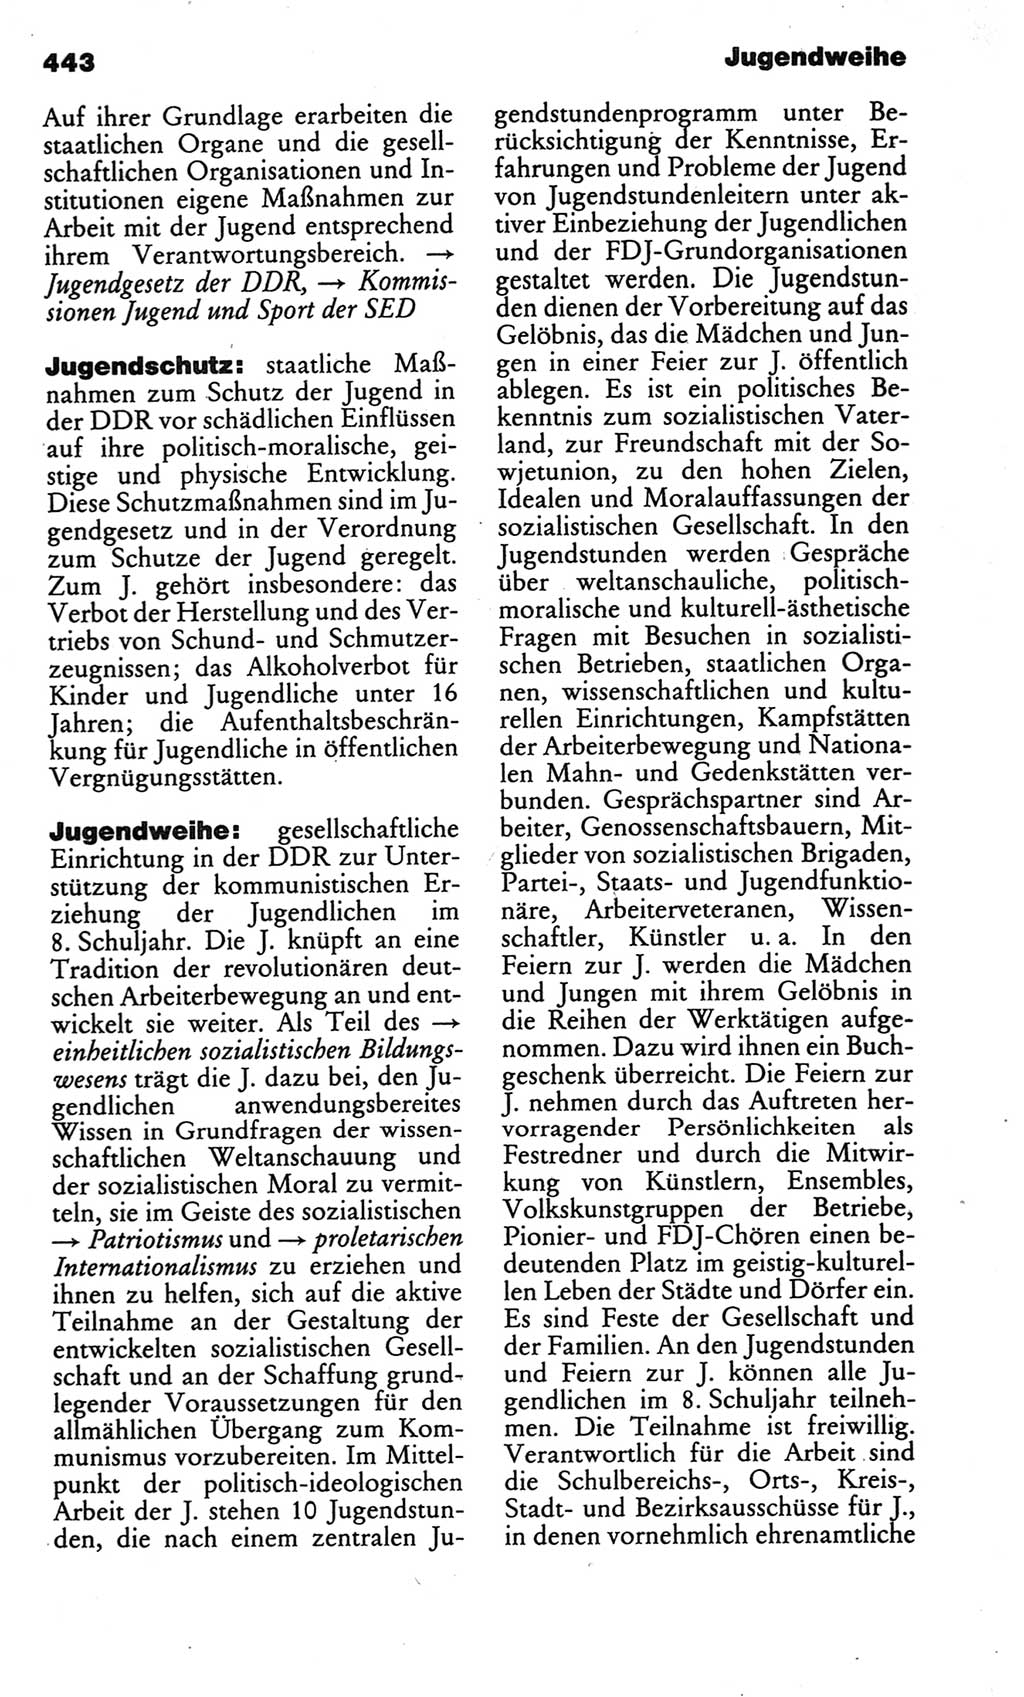 Kleines politisches Wörterbuch [Deutsche Demokratische Republik (DDR)] 1986, Seite 443 (Kl. pol. Wb. DDR 1986, S. 443)